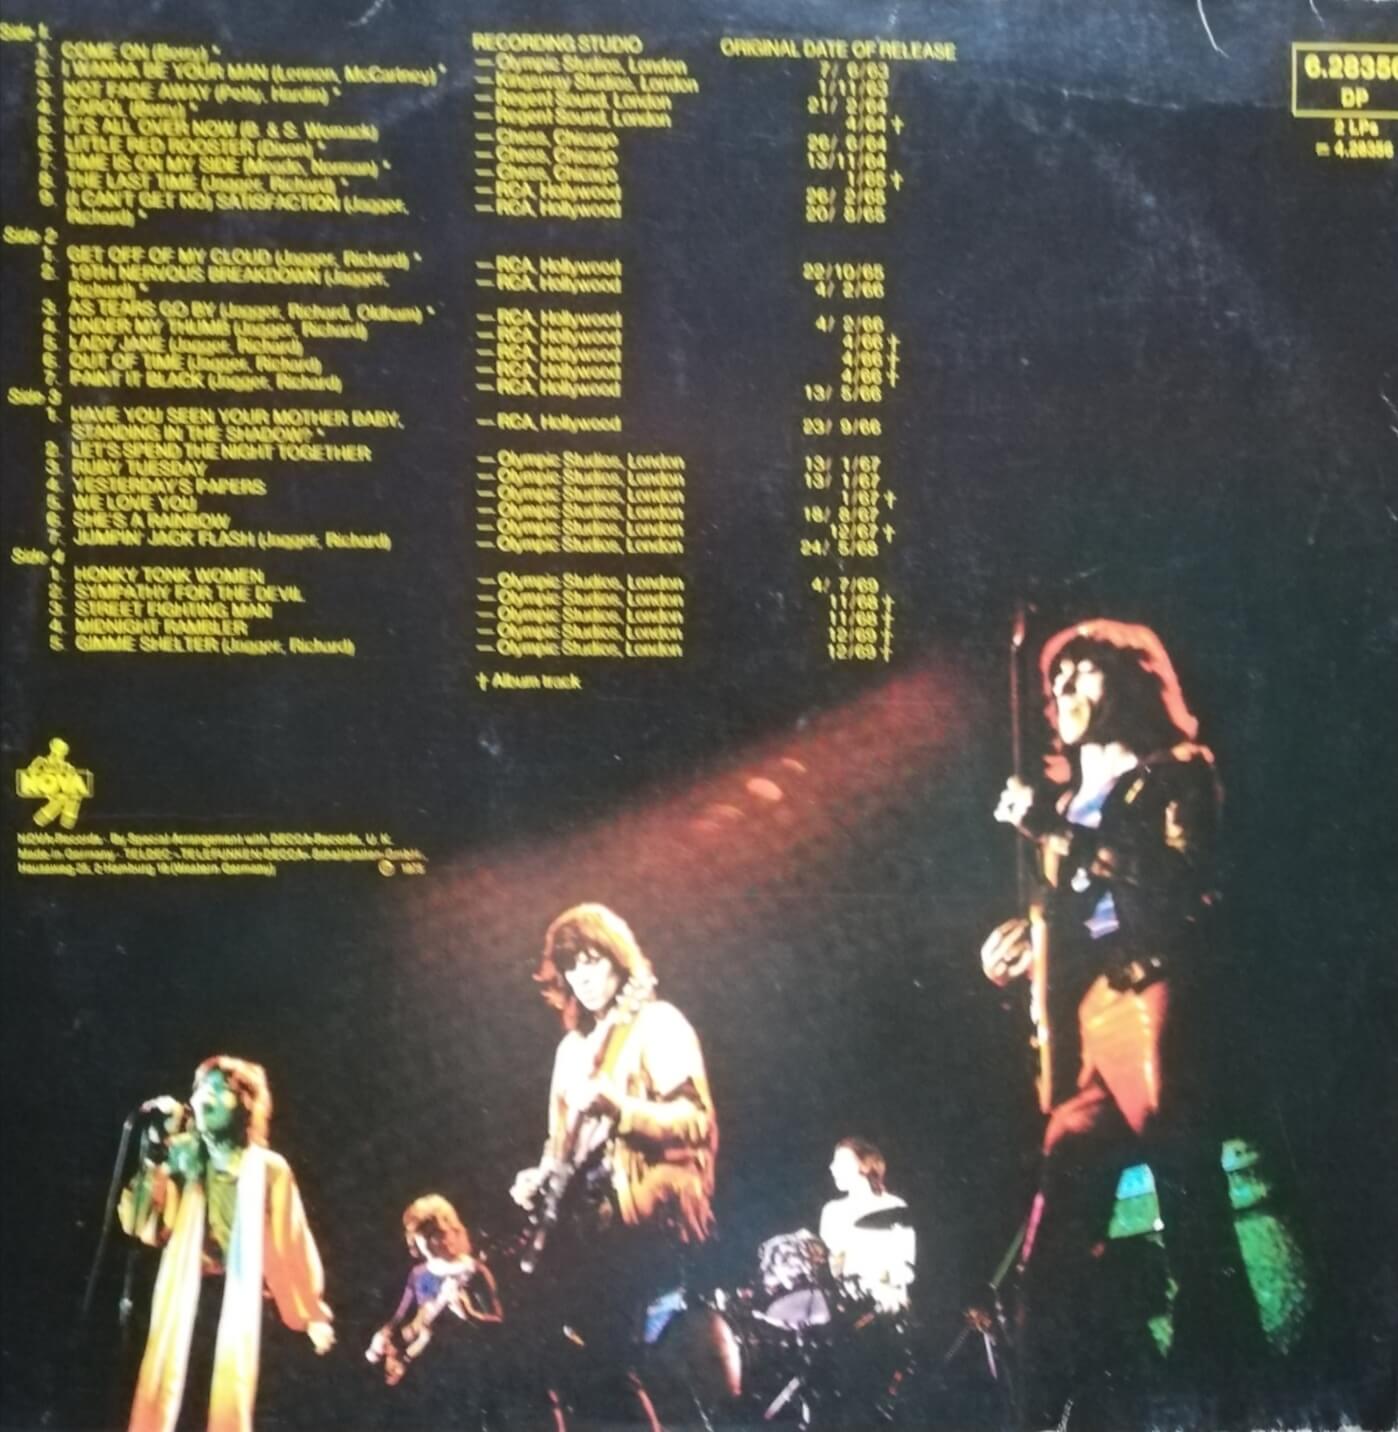 Okładka płyty winylowej artysty The Rolling Stones o tytule Rolled Gold